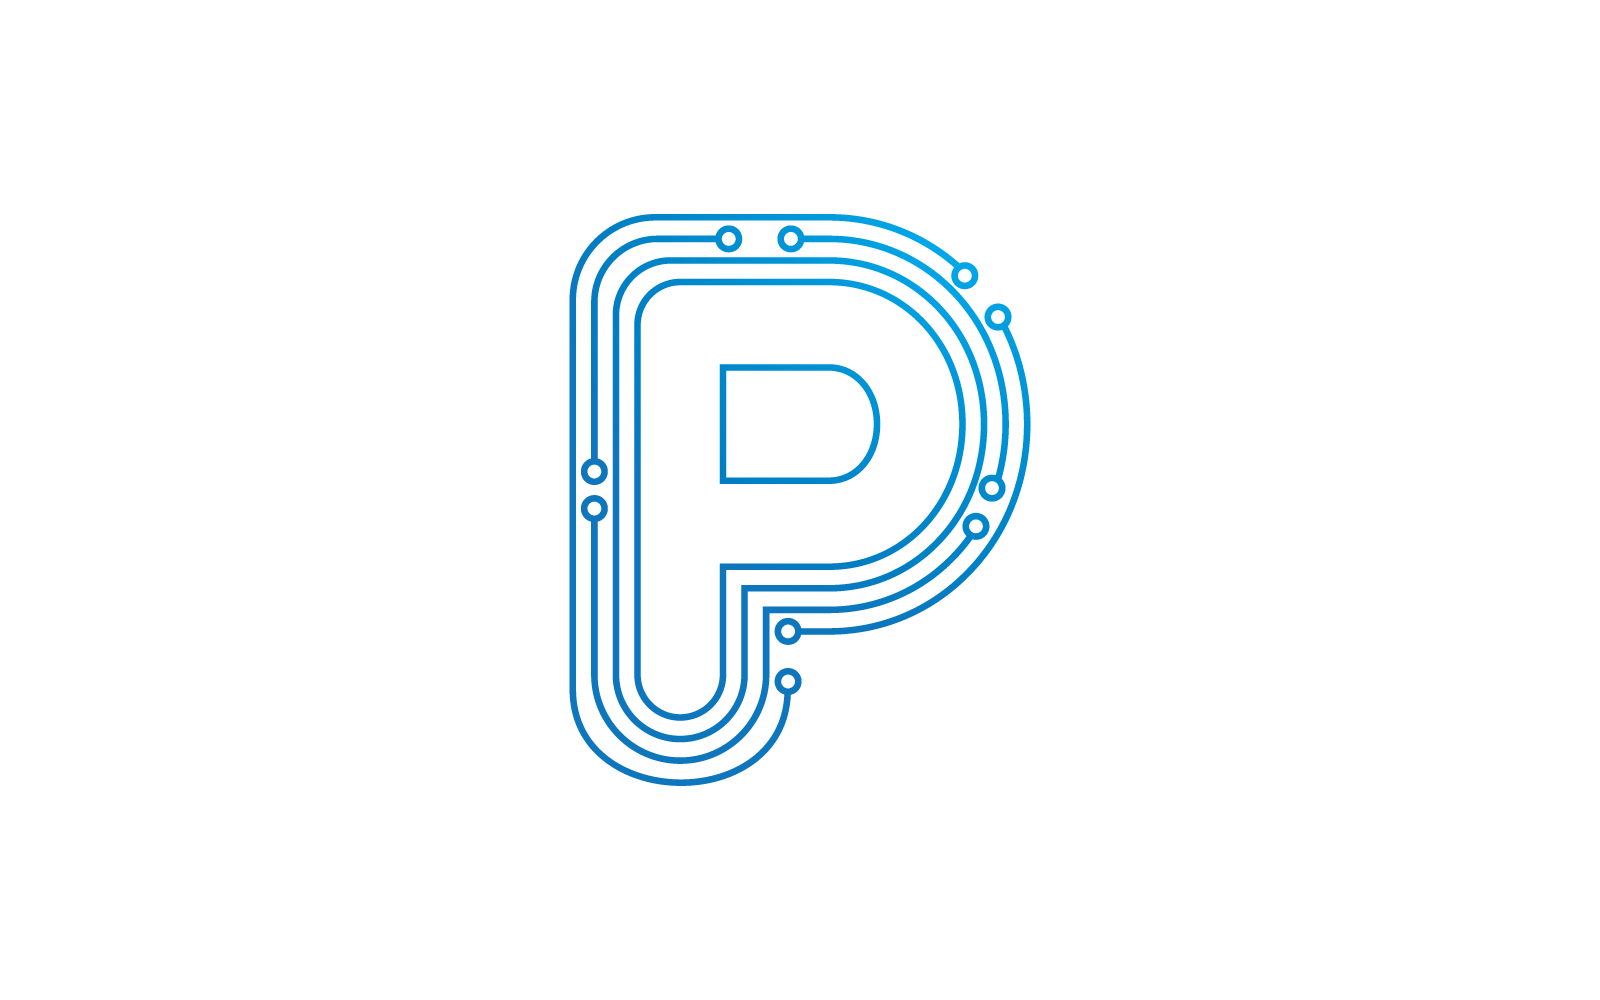 P початкової букви схеми технології ілюстрація логотип вектор шаблон